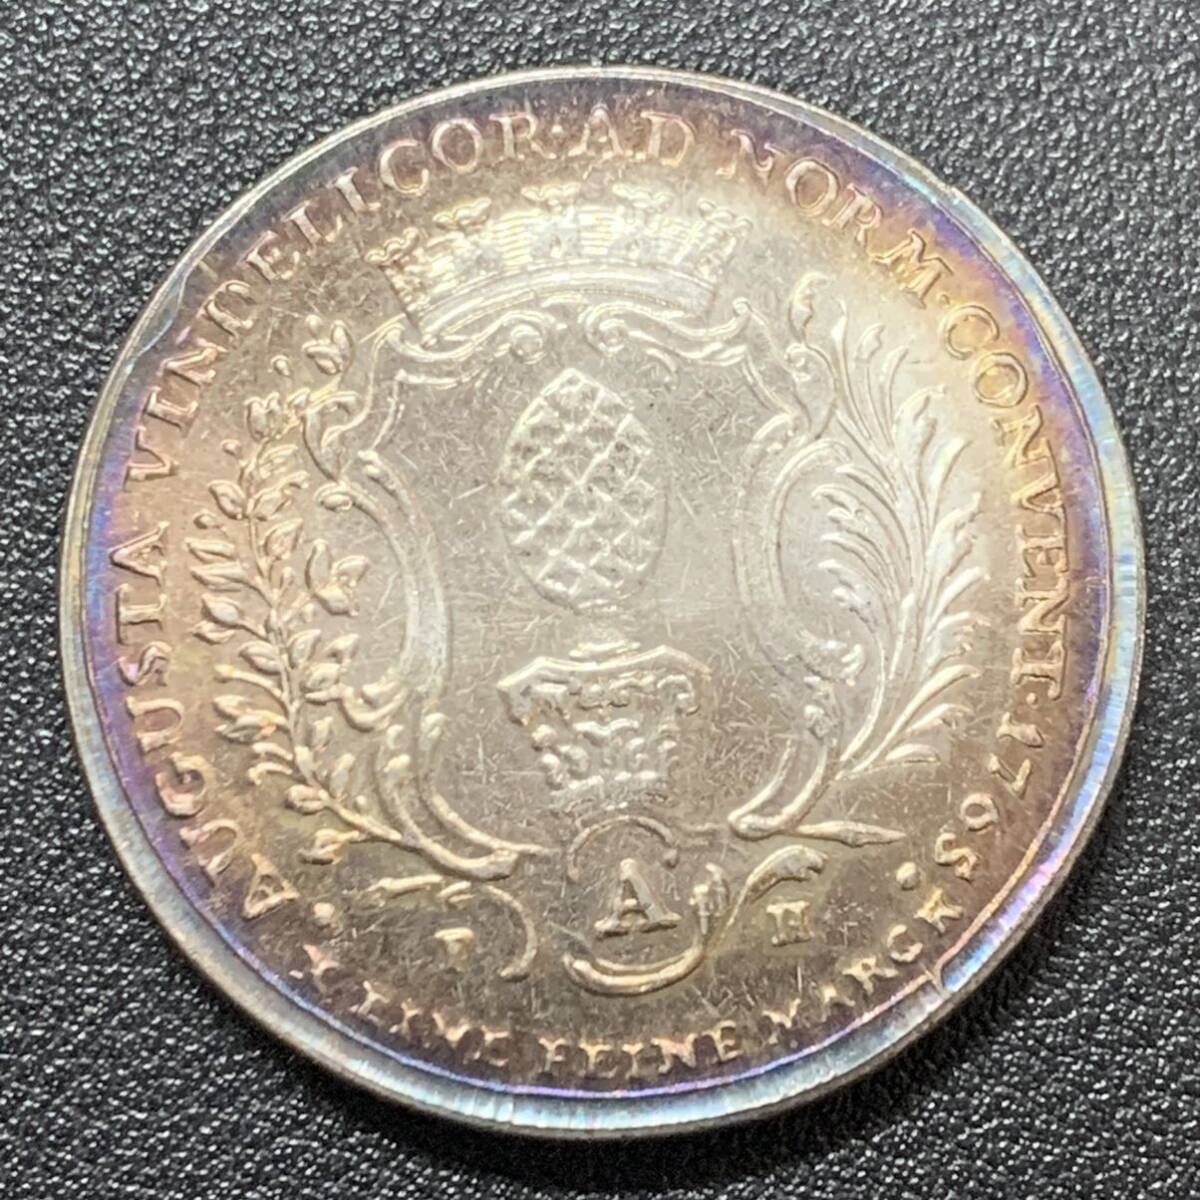 銀貨 古銭 1765年 ドイツ フランツ1世 バロック シンボル 松ぼっくり 皇帝 大型 コイン 硬貨  ターラーの画像2